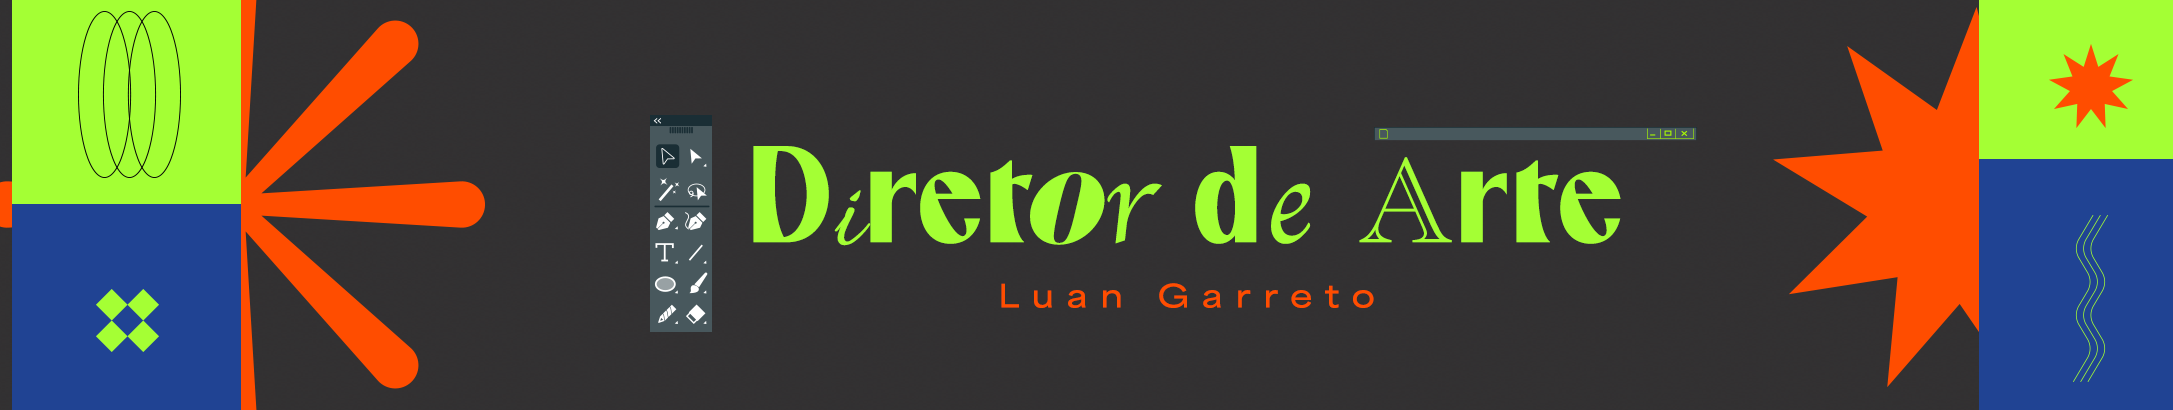 Luan Garreto's profile banner